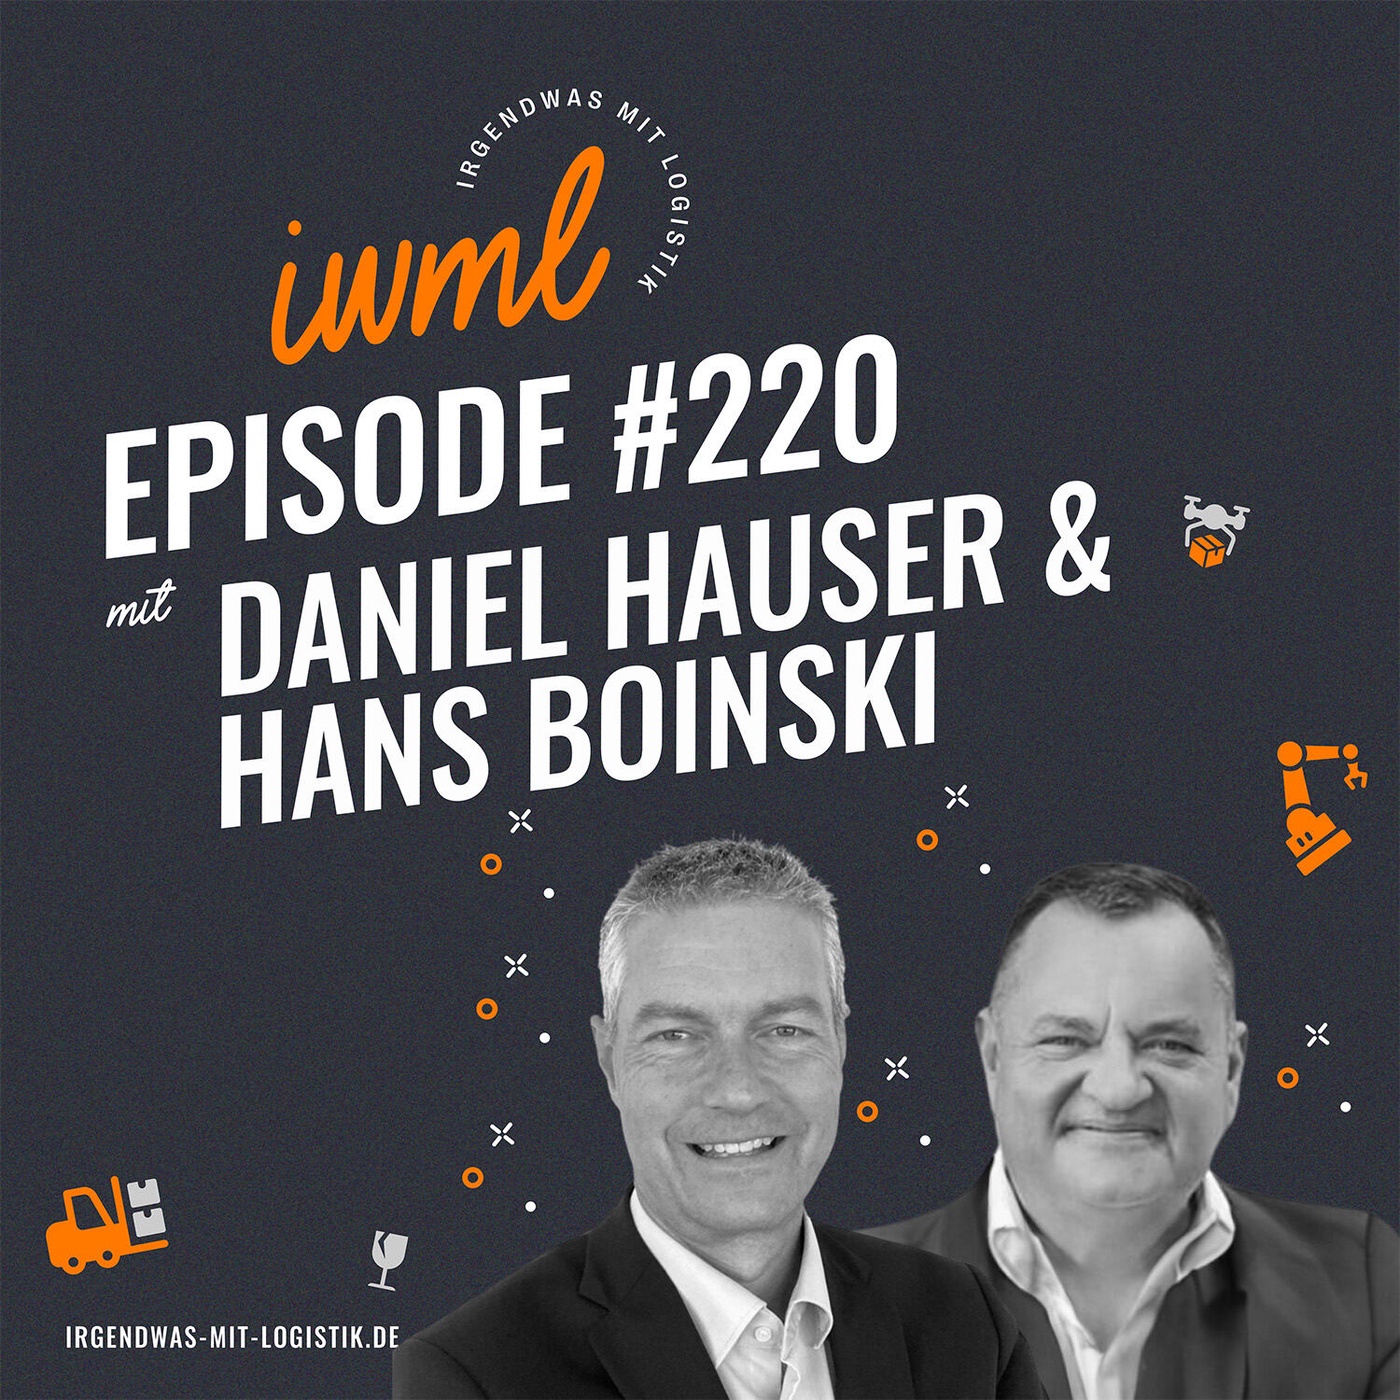 IWML #220 mit Daniel Hauser und Hans Boinski von Kardex